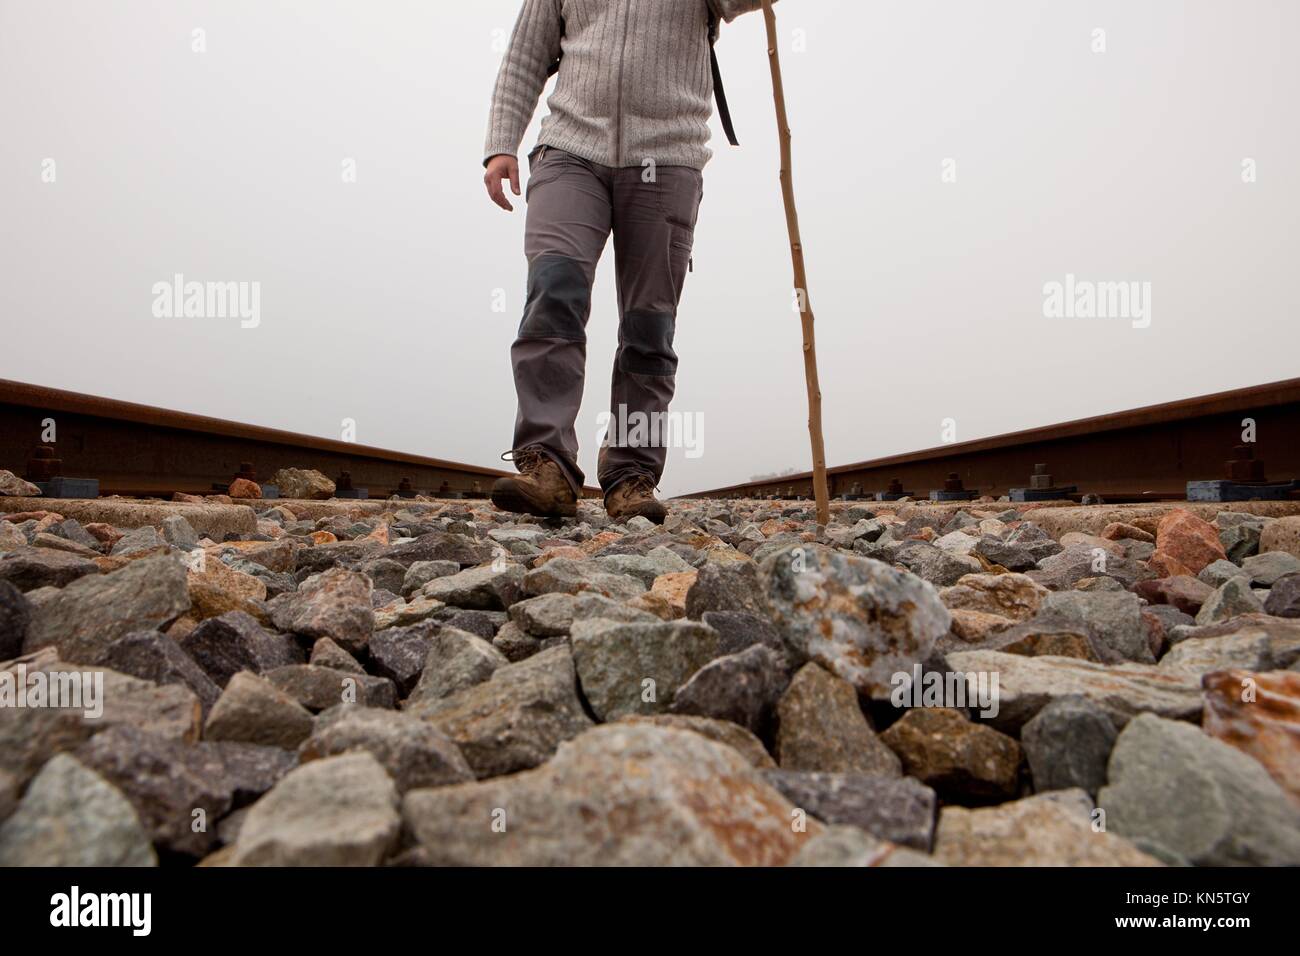 Un uomo a camminare sulle vie con la canna da zucchero e trekking i vestiti di una fitta giornata di nebbia. Foto Stock